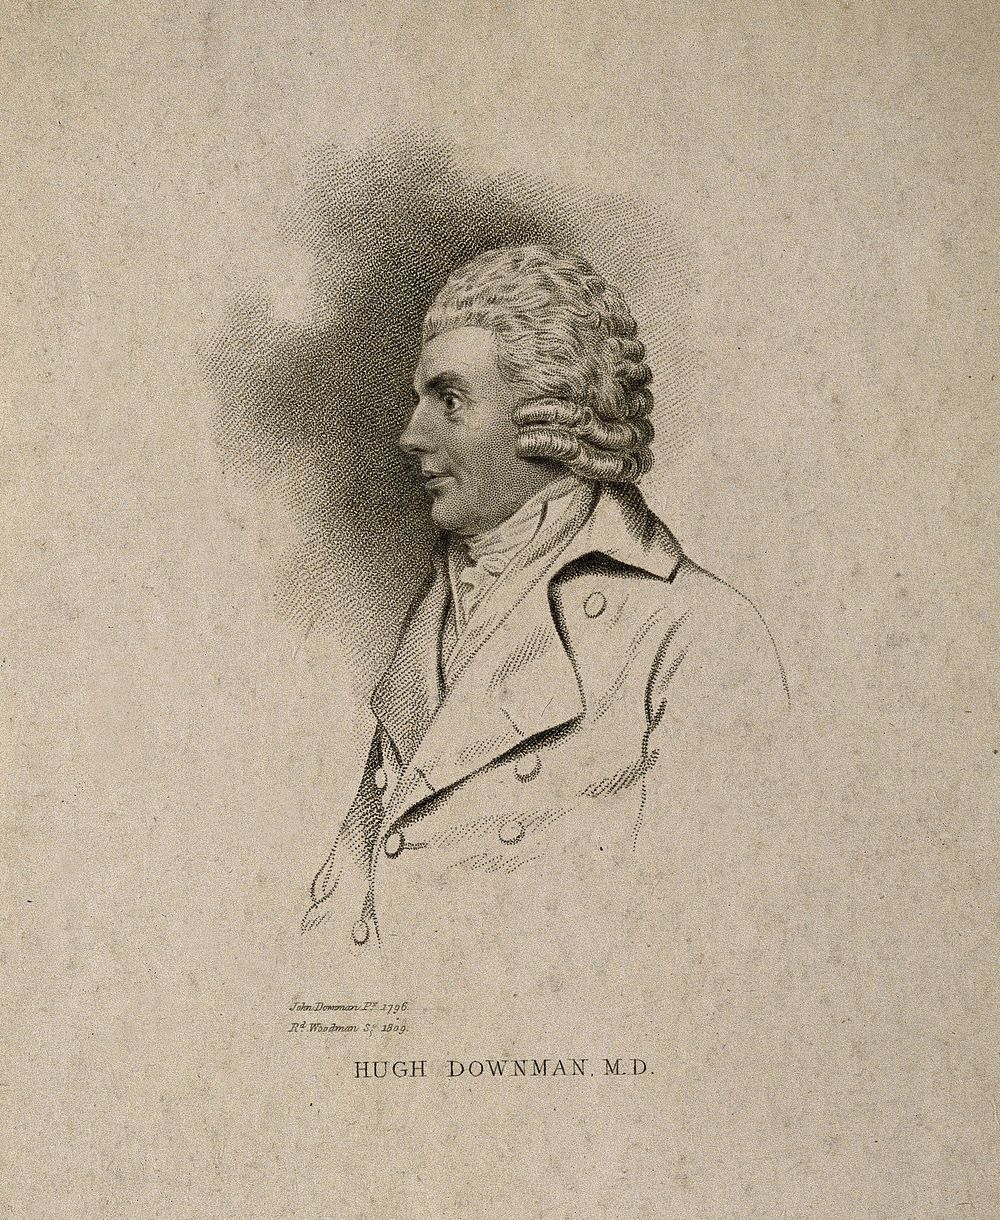 Hugh Downman. Stipple engraving by R. Woodman, 1809, after J. Downman, 1796.